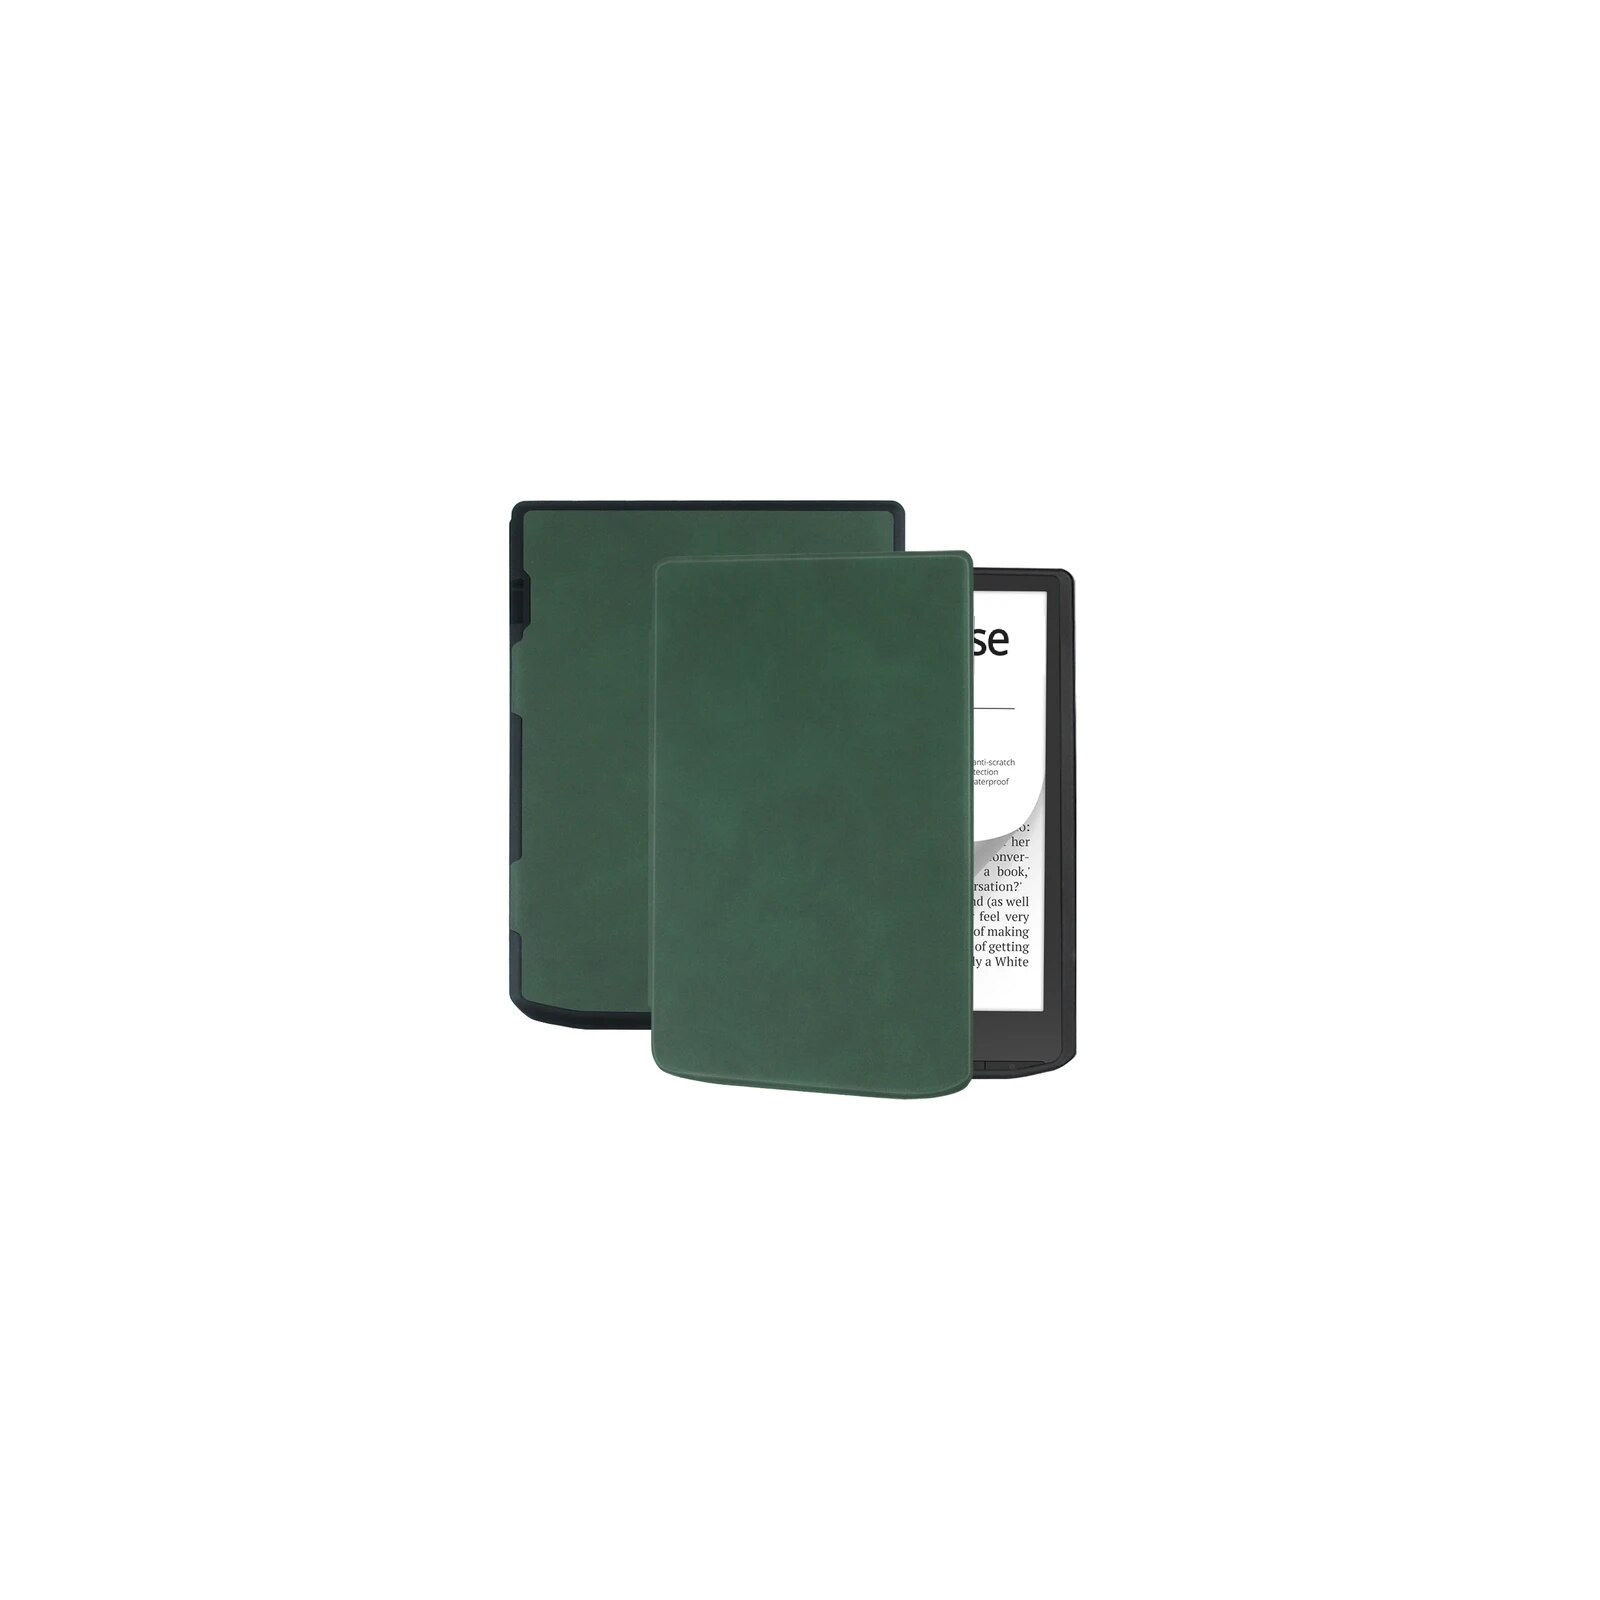 Чехол для электронной книги BeCover Smart Case PocketBook 629 Verse / 634 Verse Pro 6" Black (710450) изображение 2